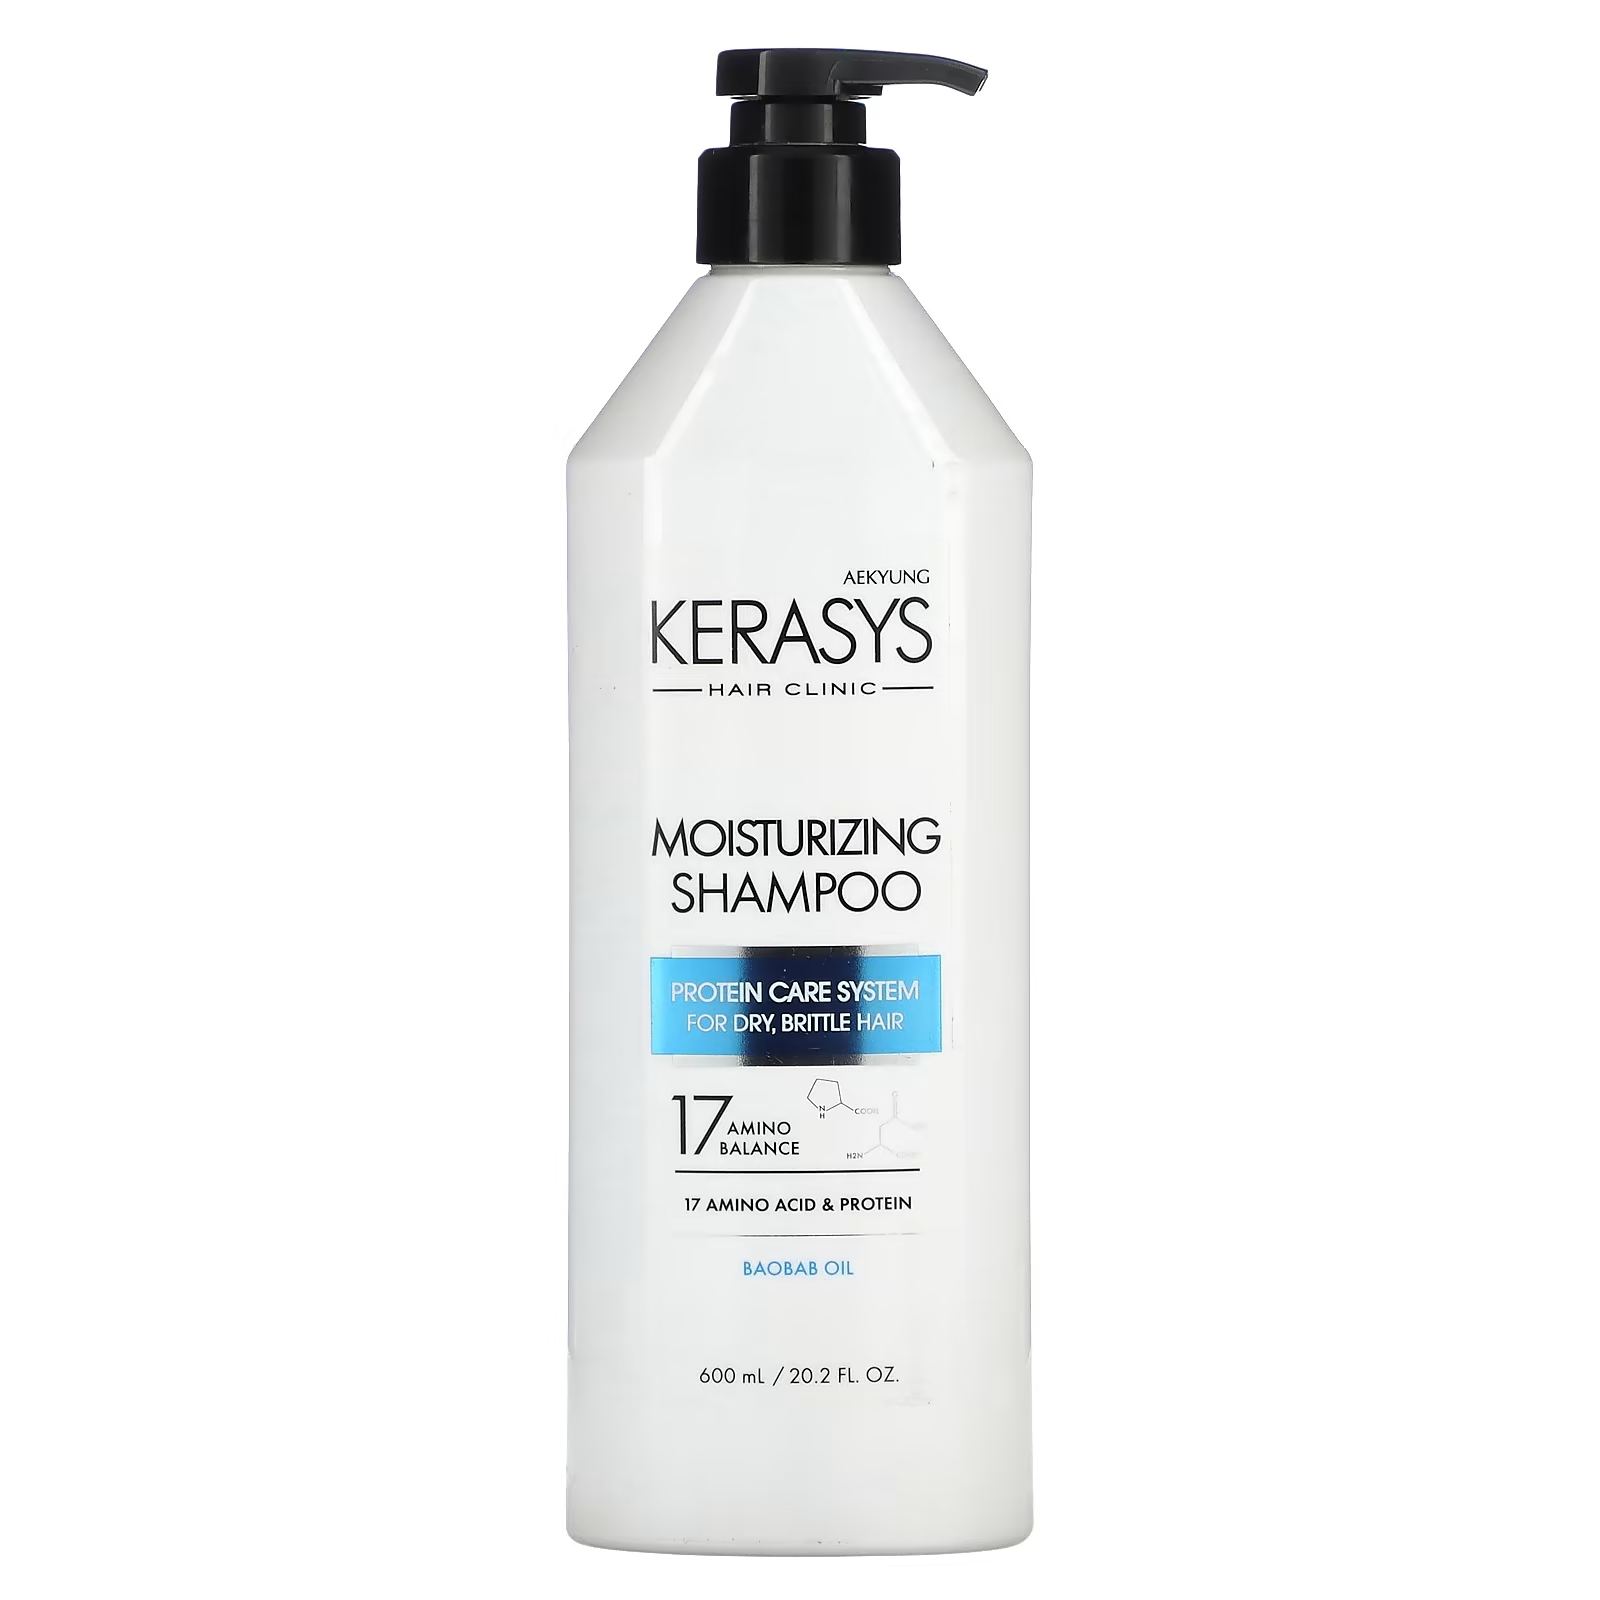 Шампунь Kerasys увлажняющий для сухих и ломких волос, 600 мл kerasys увлажняющий набор шампунь и кондиционер для сухих и ломких волос moisturizing